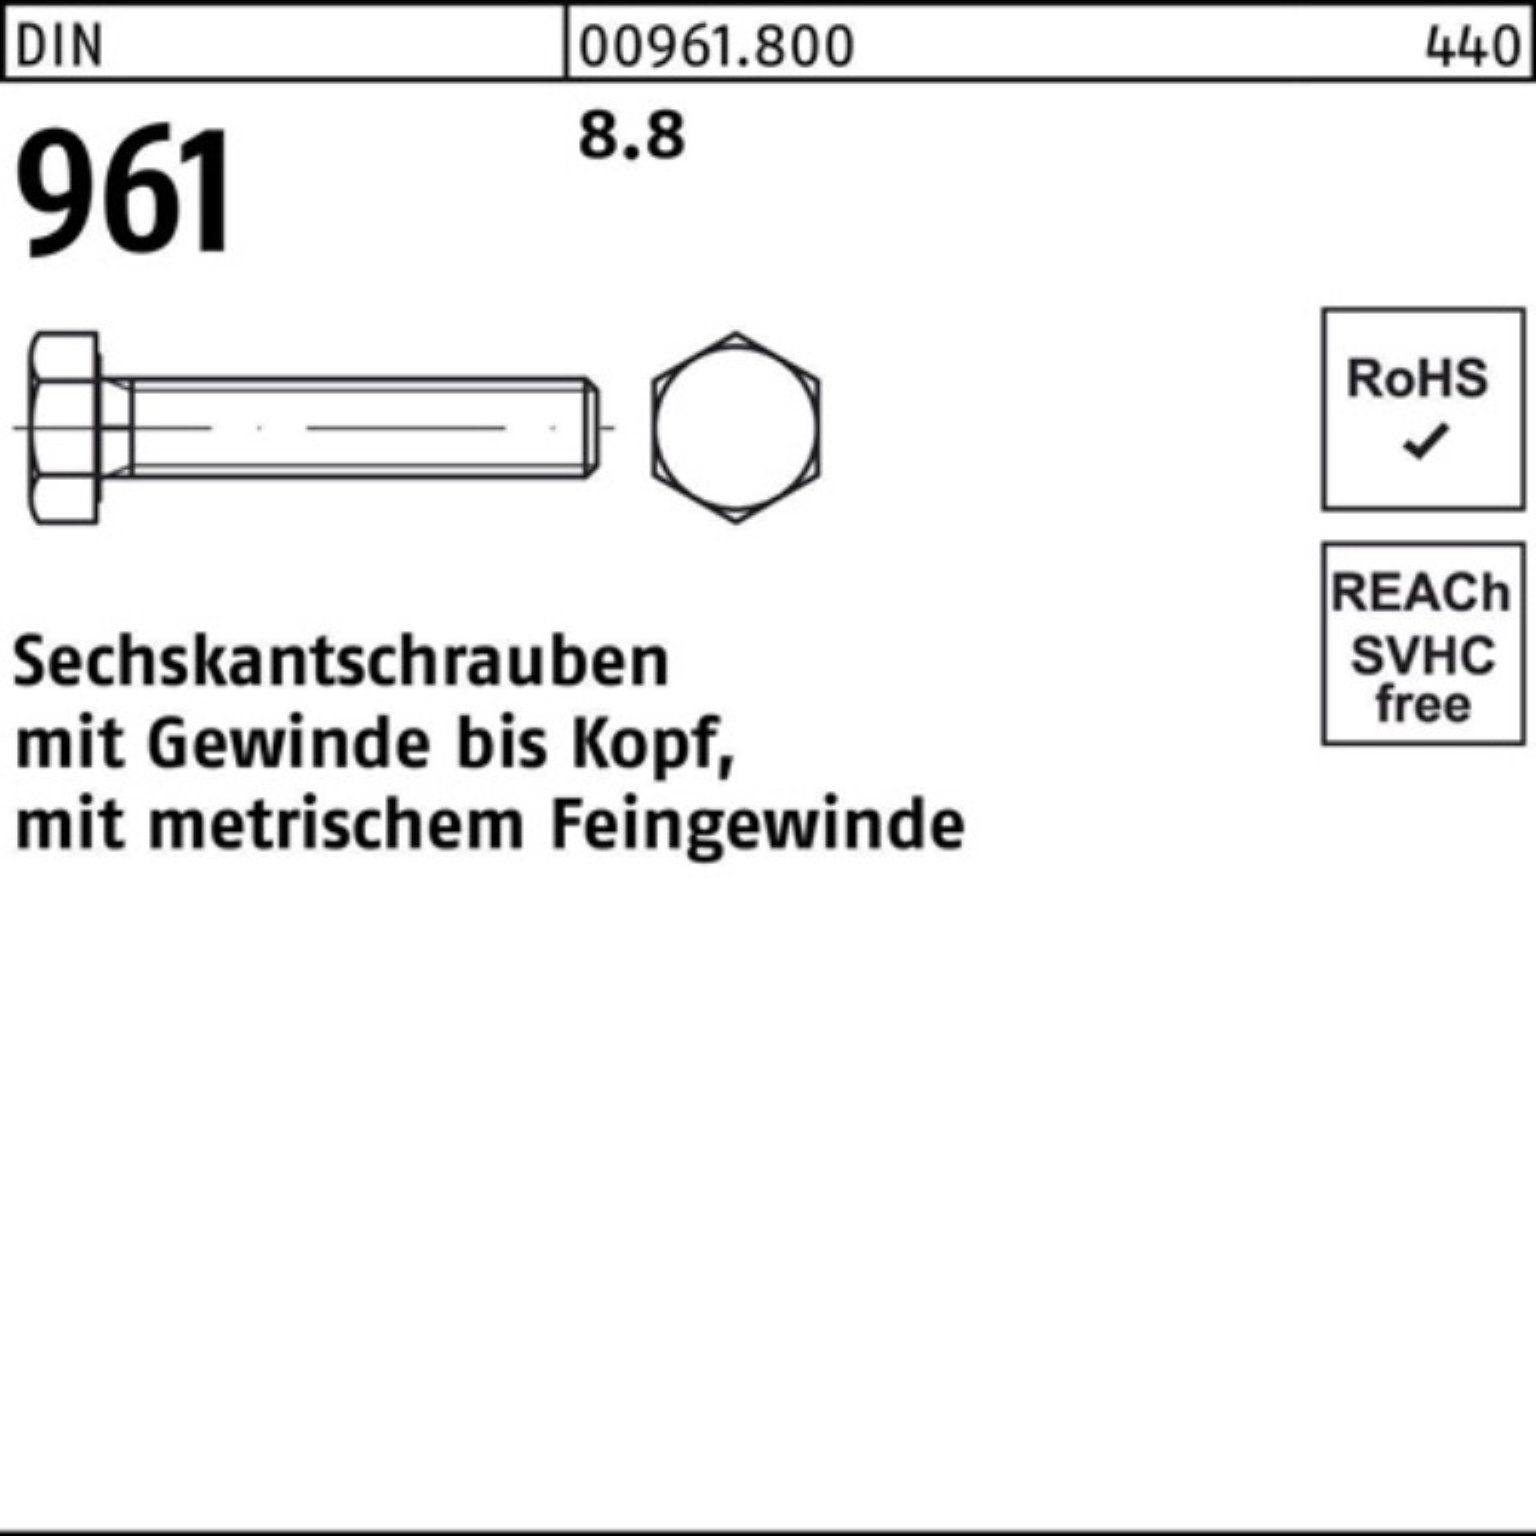 80 Sechskantschraube 96 100er Stück VG Sechskantschraube DIN Pack DIN M8x1x 961 Reyher 8.8 100